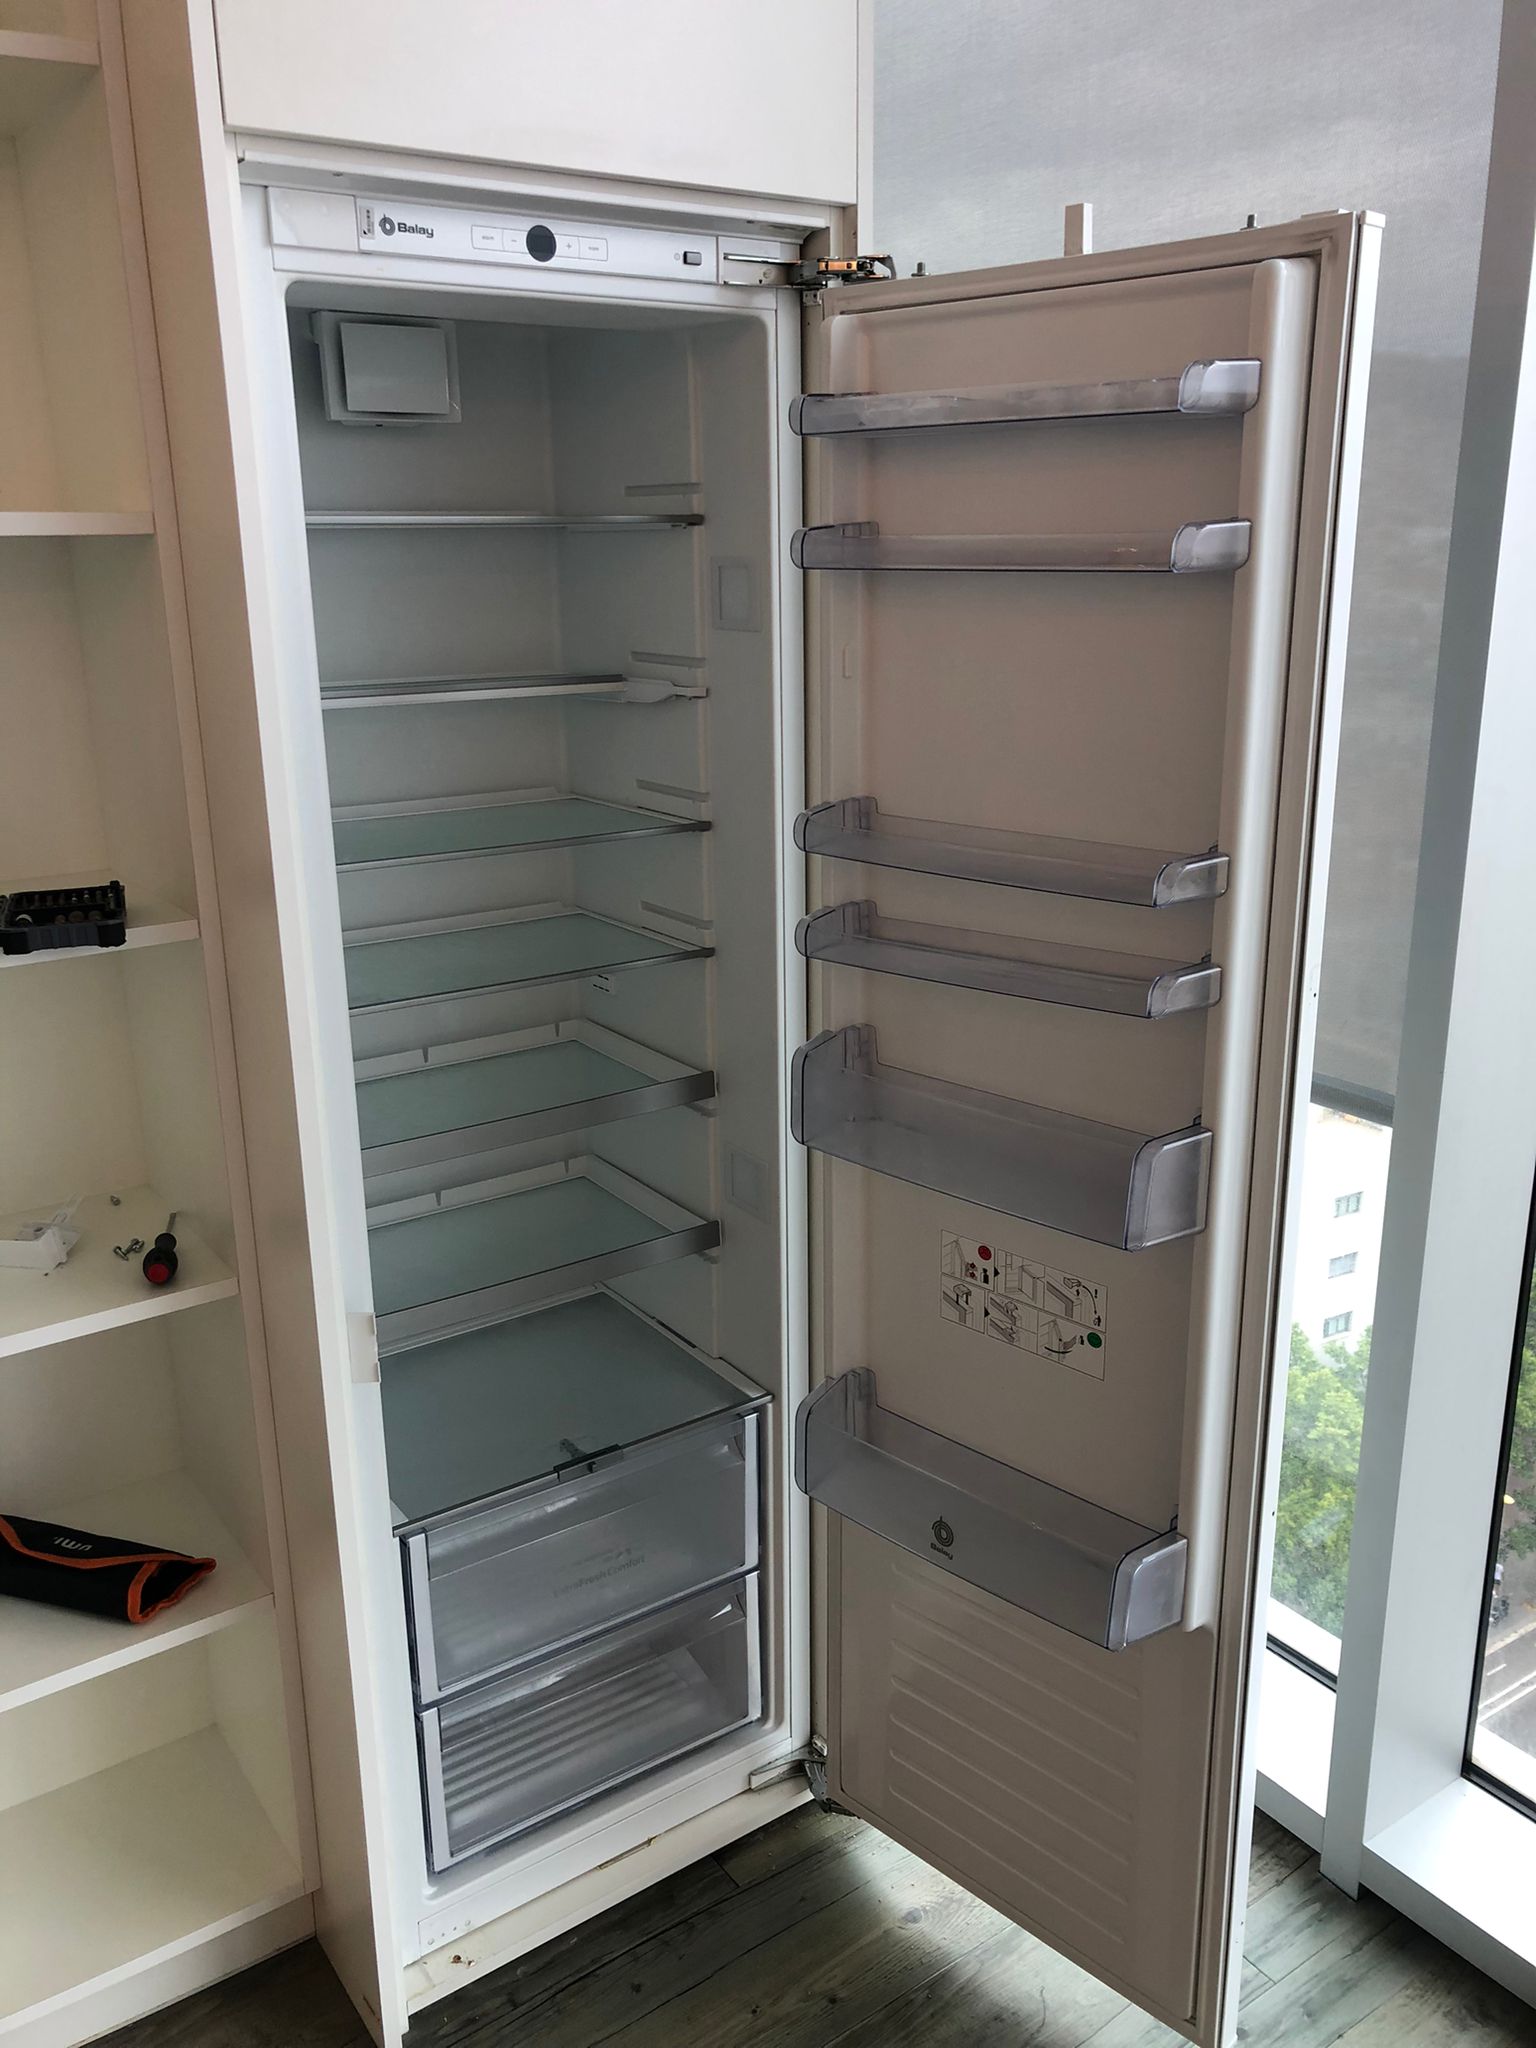 Balay 170 cm Neveras, frigoríficos de segunda mano baratos